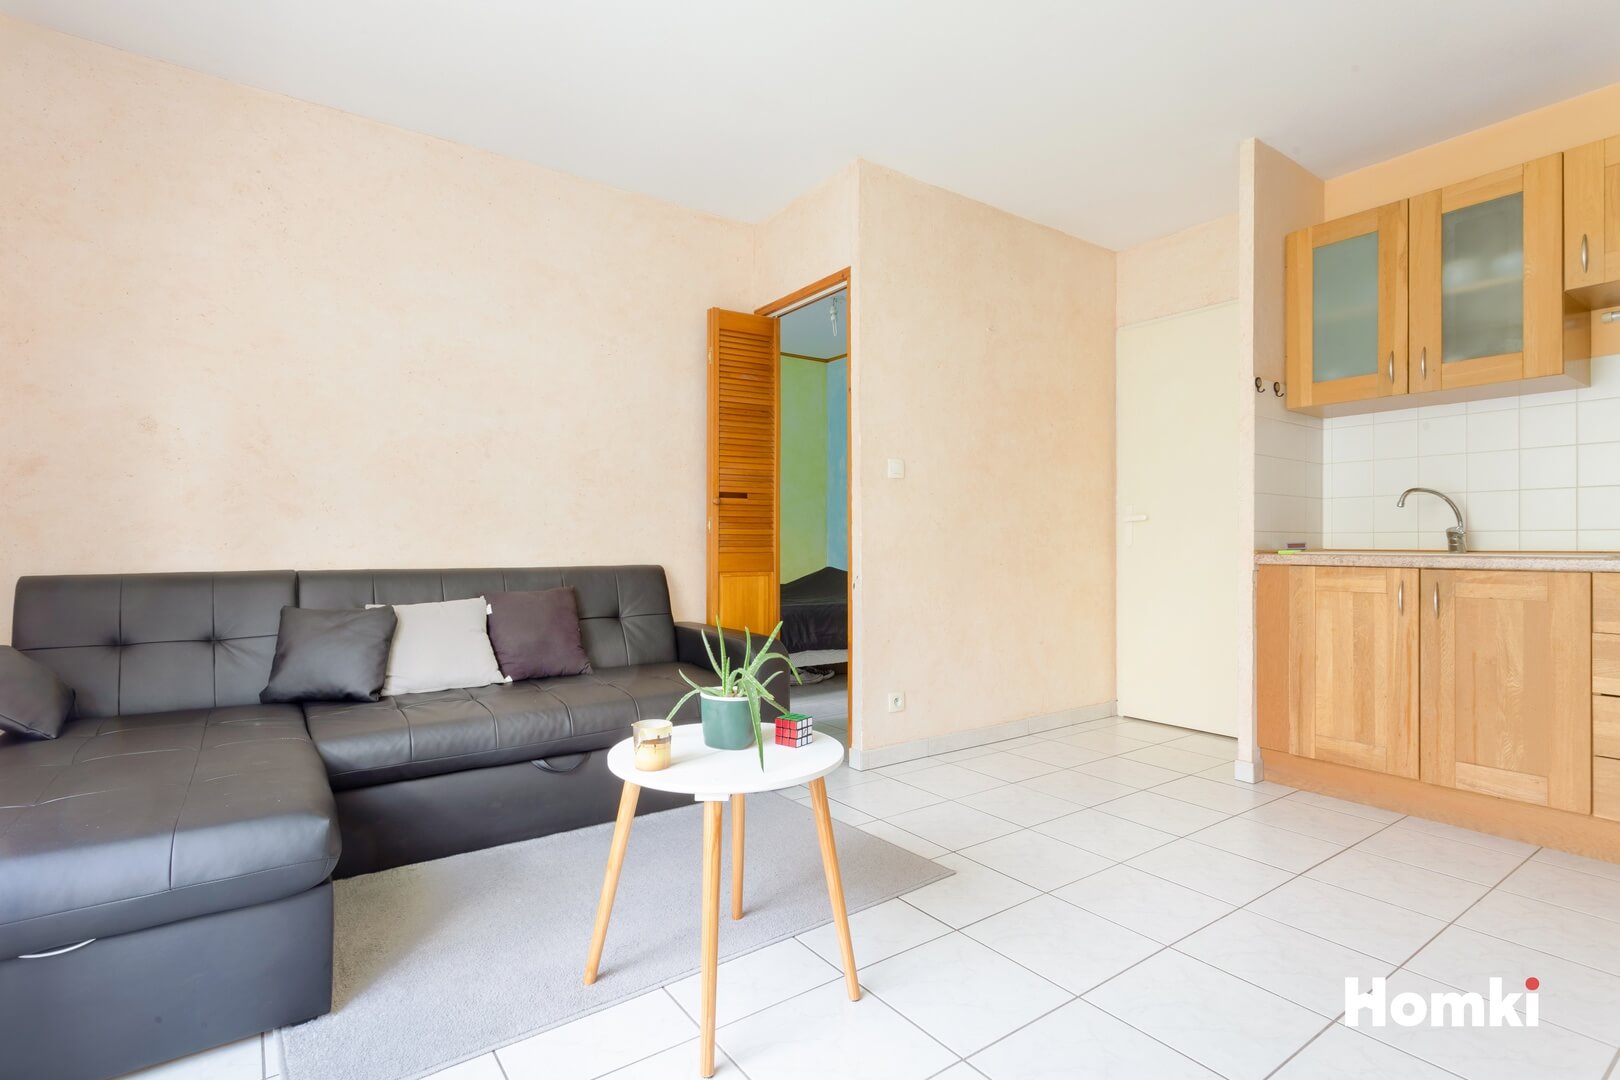 Homki - Vente Appartement  de 37.0 m² à Chambéry 73000